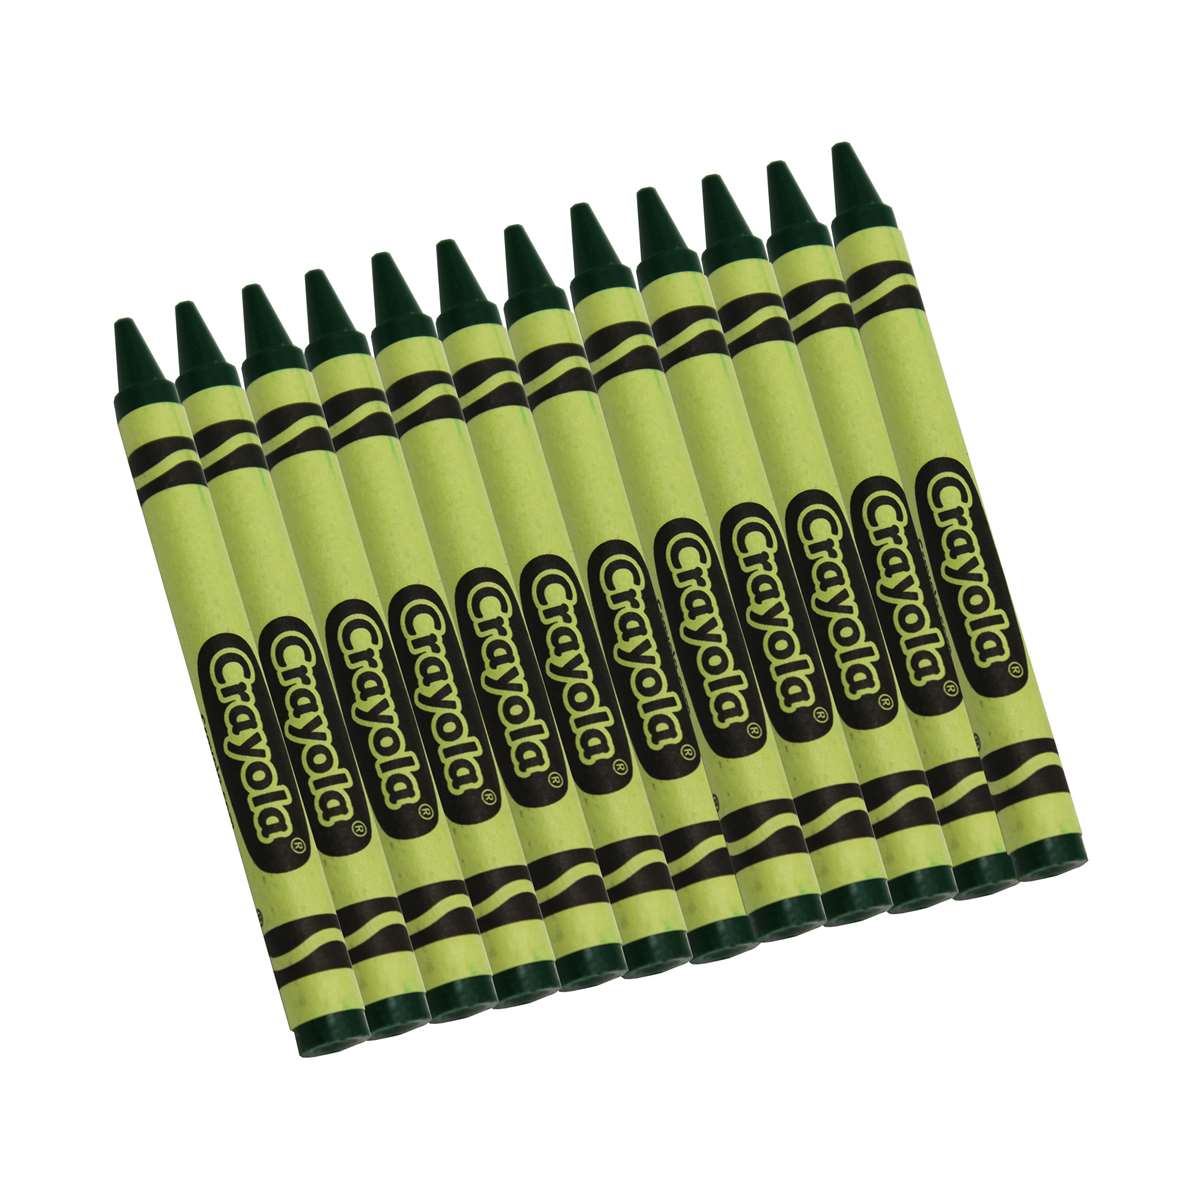 16) Crayola Crayons (green) BULK